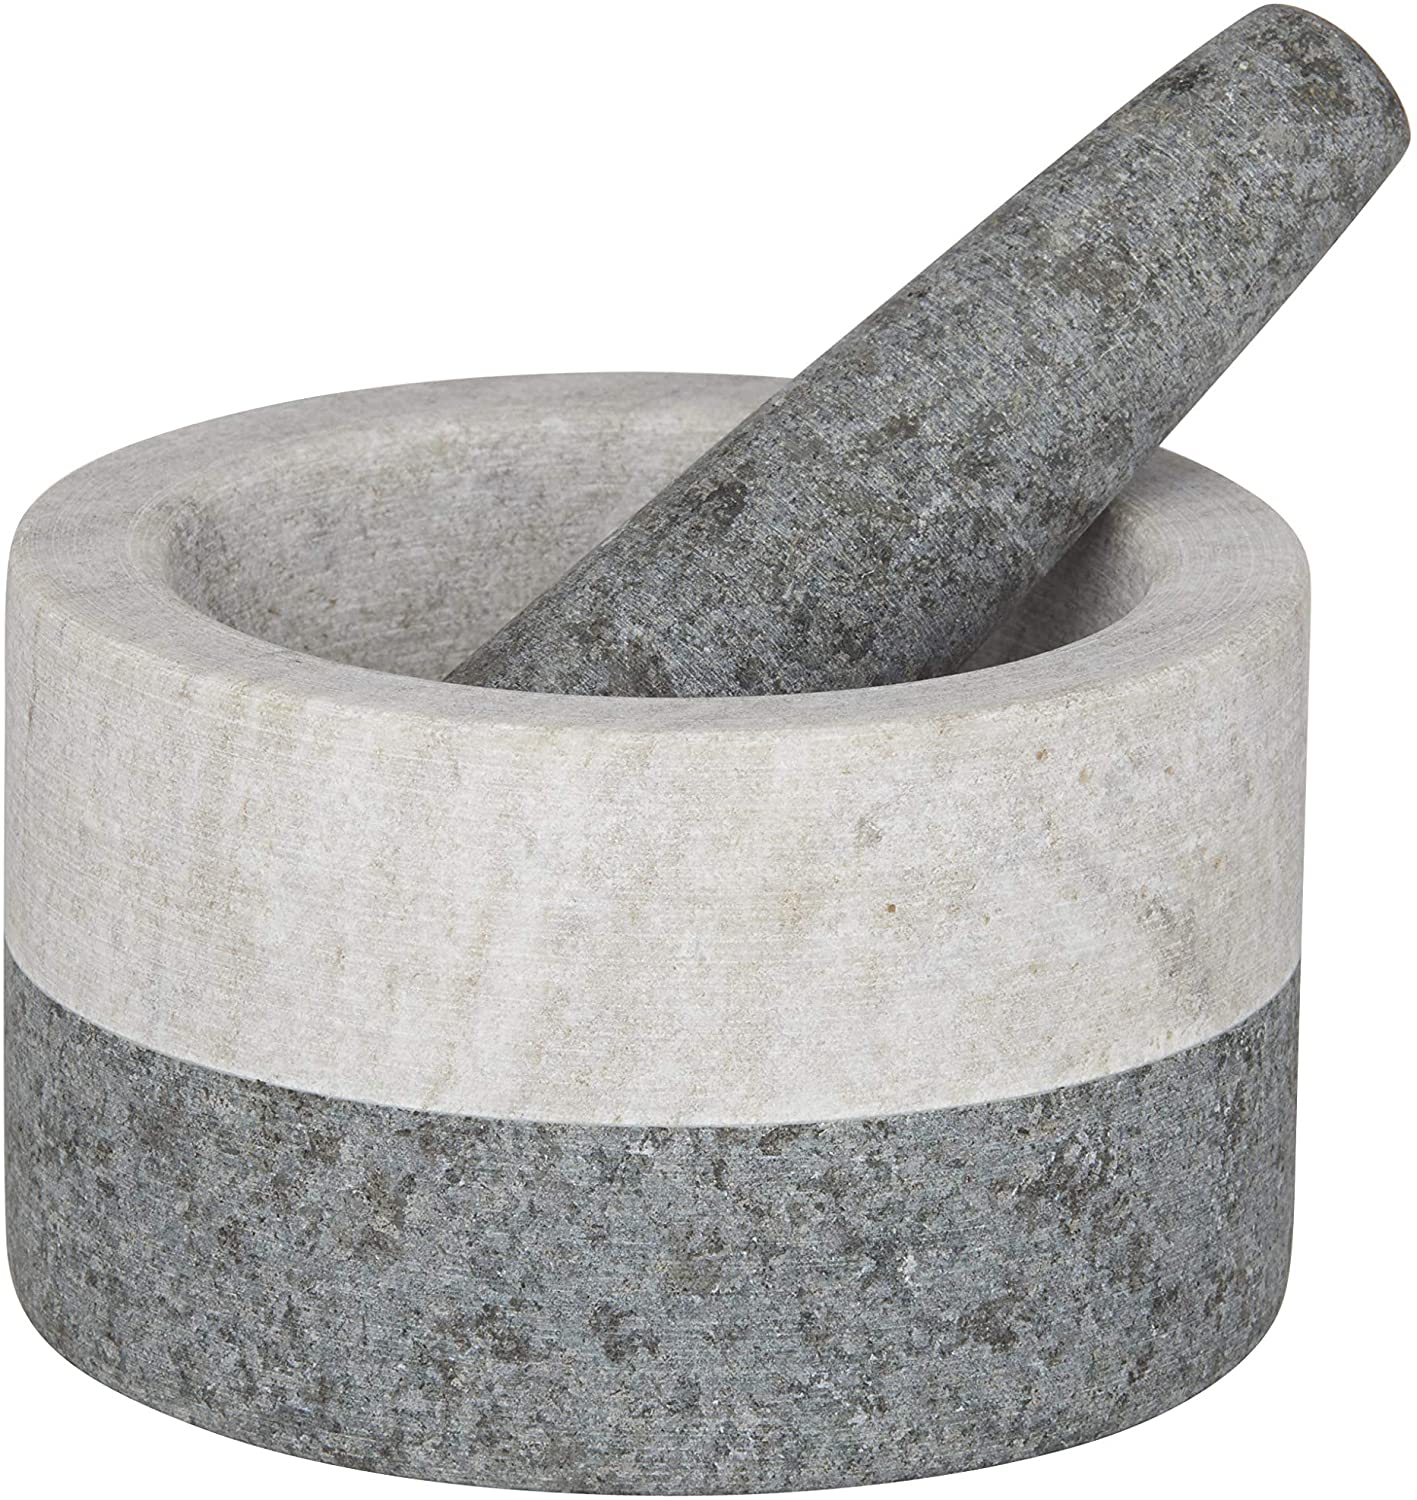 Akin Granite/Marble Mortar & Pestle 13x8cm